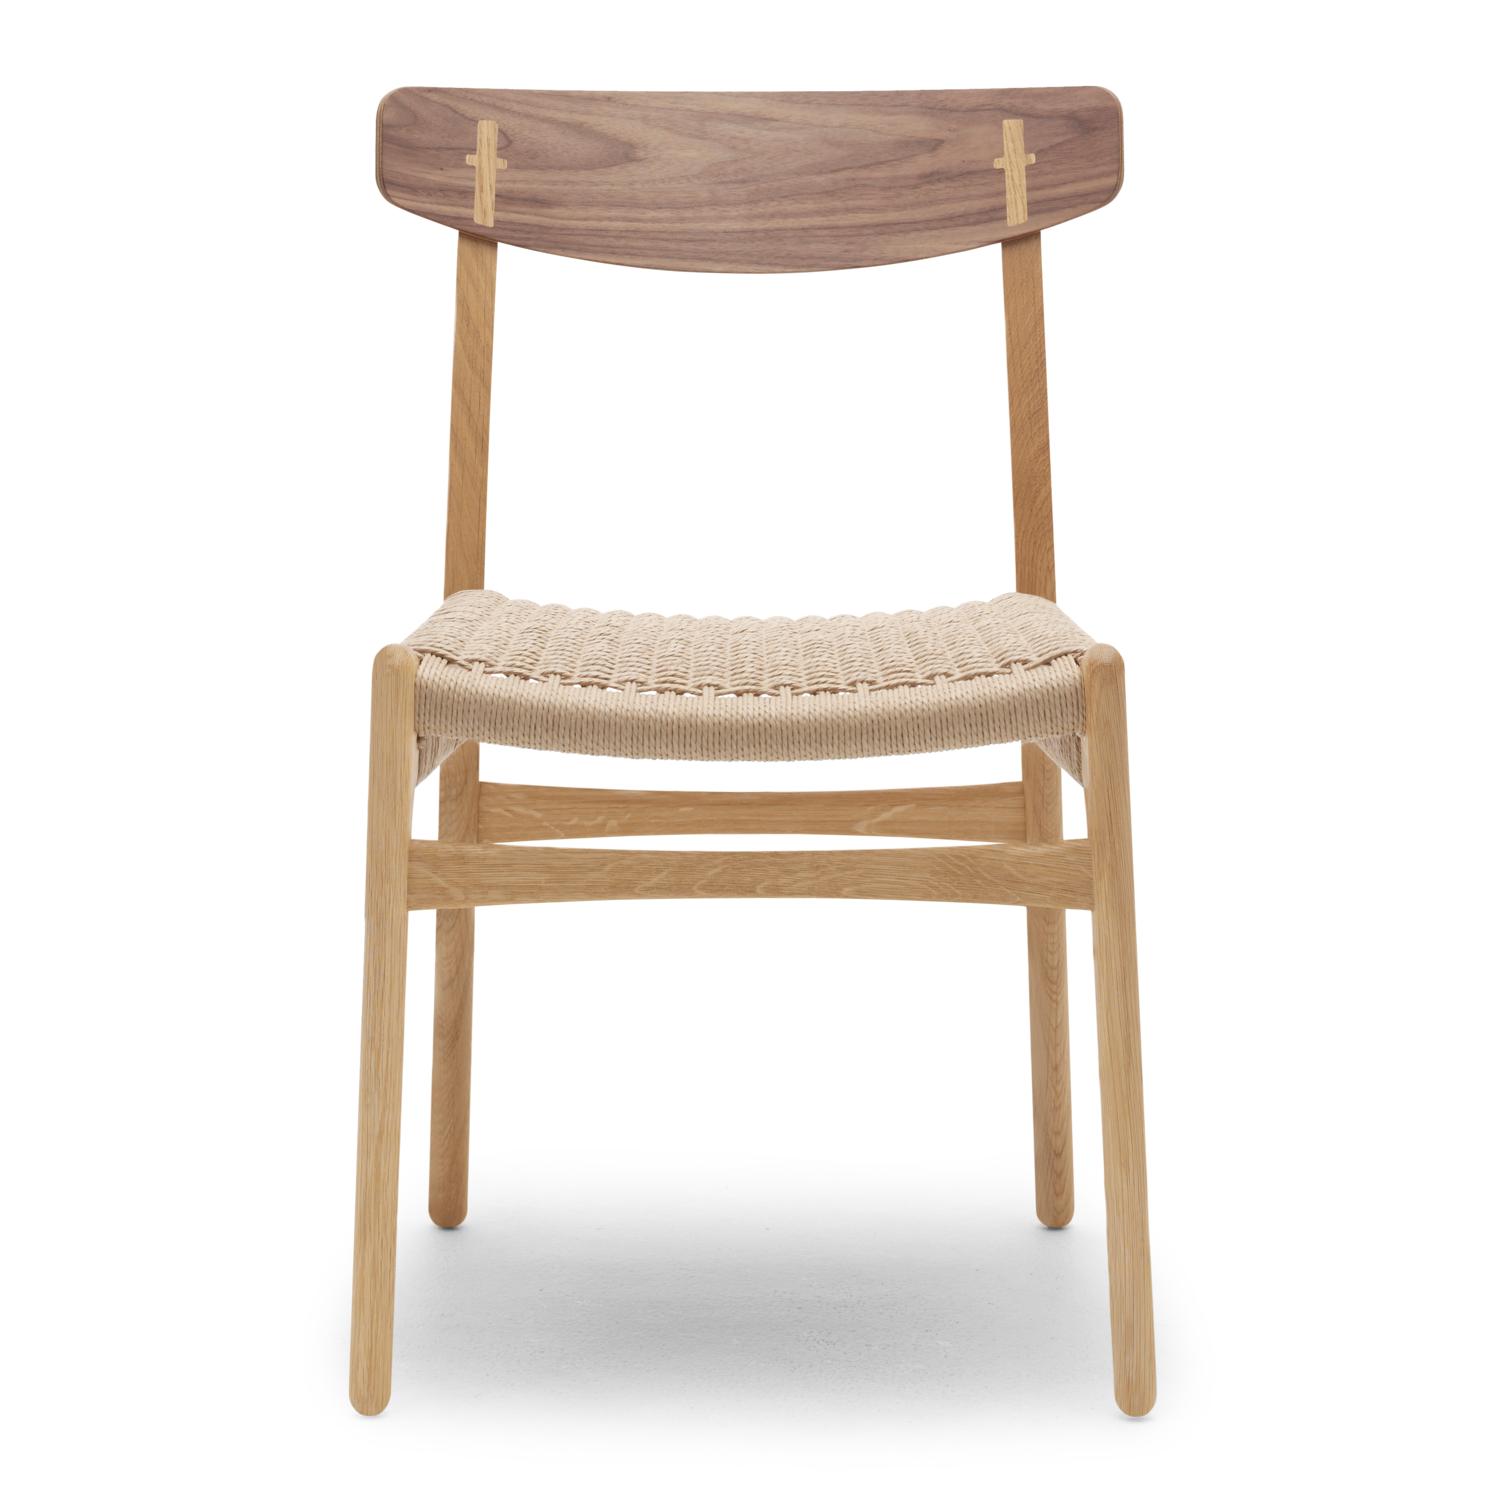 Carl Hansen CH23 -stol, oljad valnöt/naturlig sladd/ekstolram